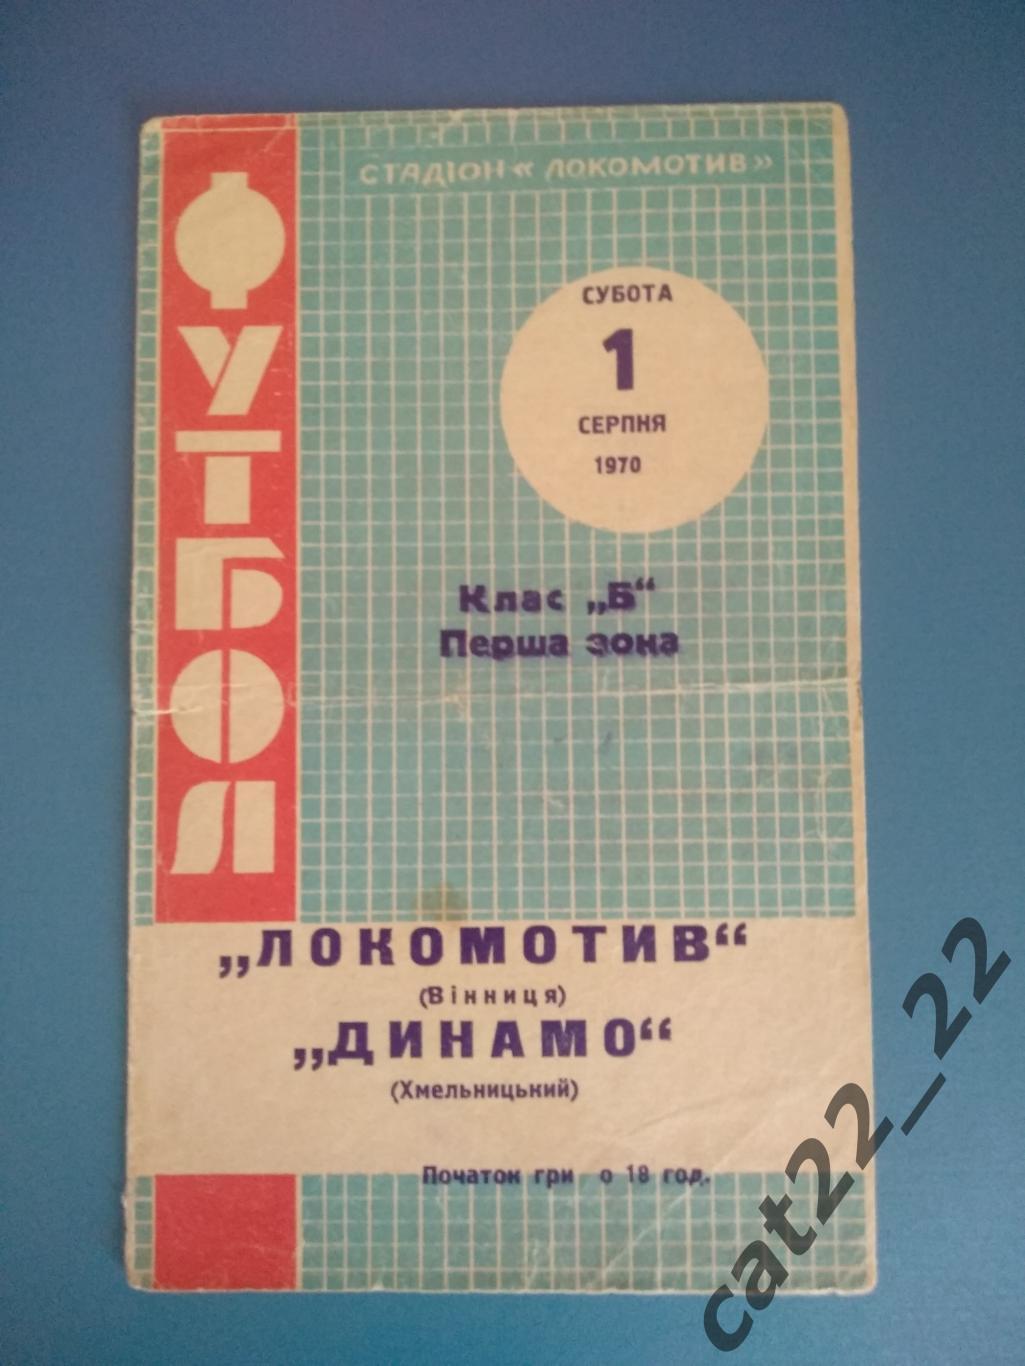 Локомотив Винница - Динамо Хмельницкий 1970